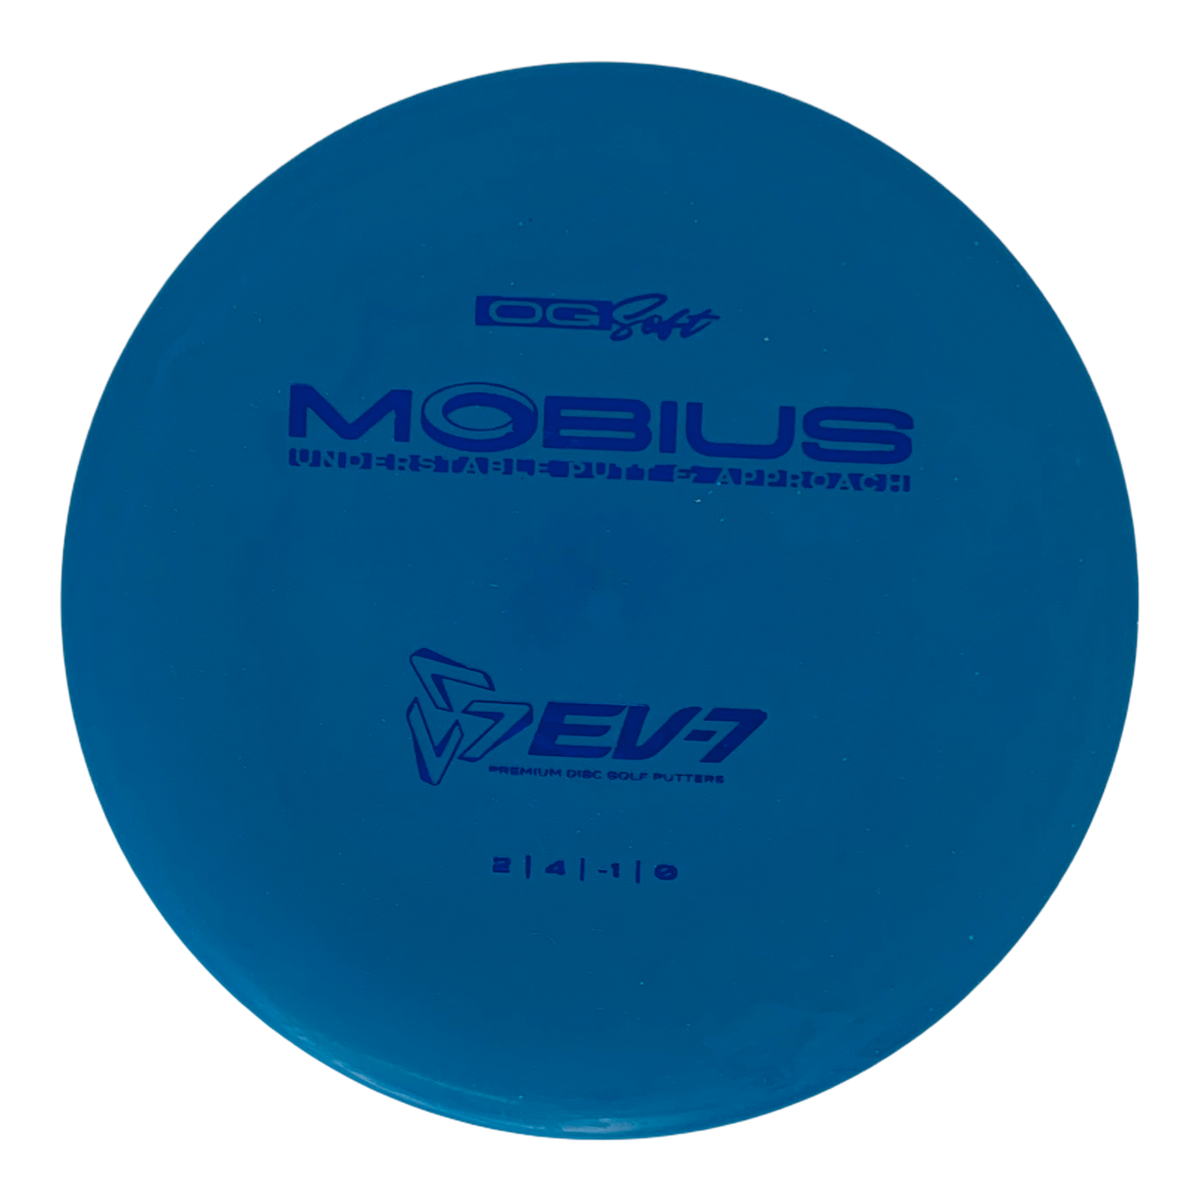 EV-7 Mobius - OG Soft